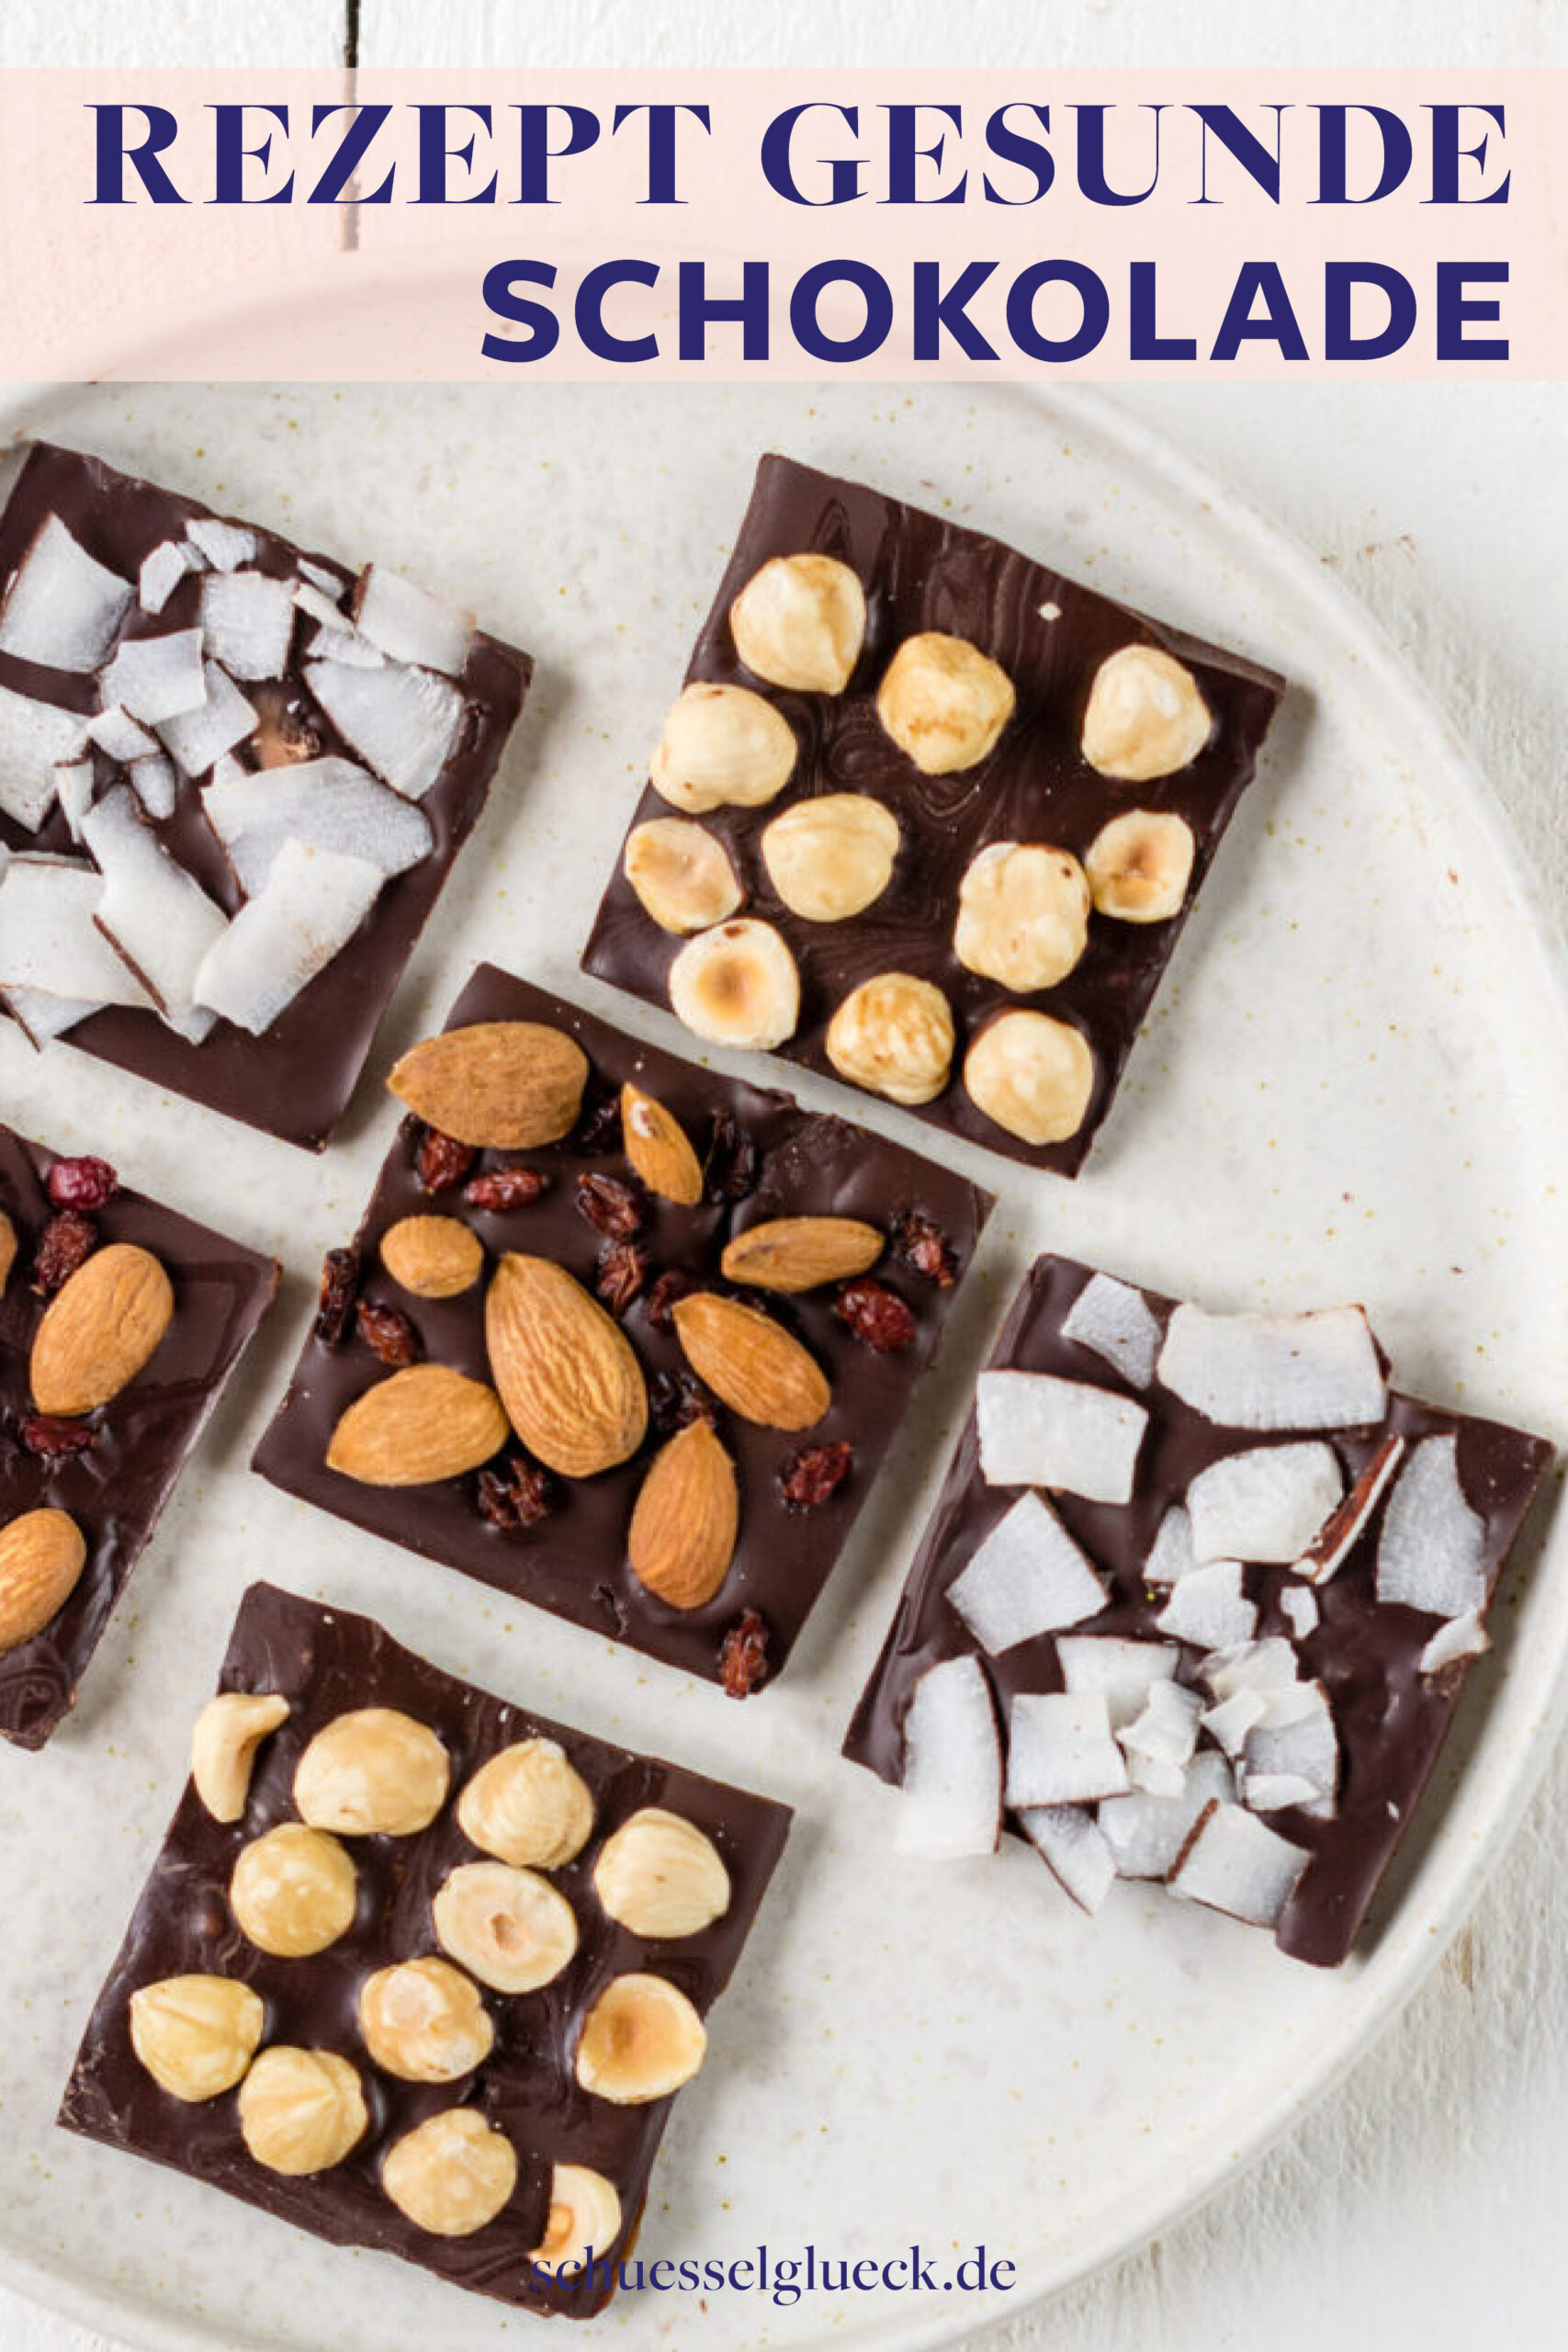 Gesunde Schokolade selber machen – mit nur vier Zutaten!